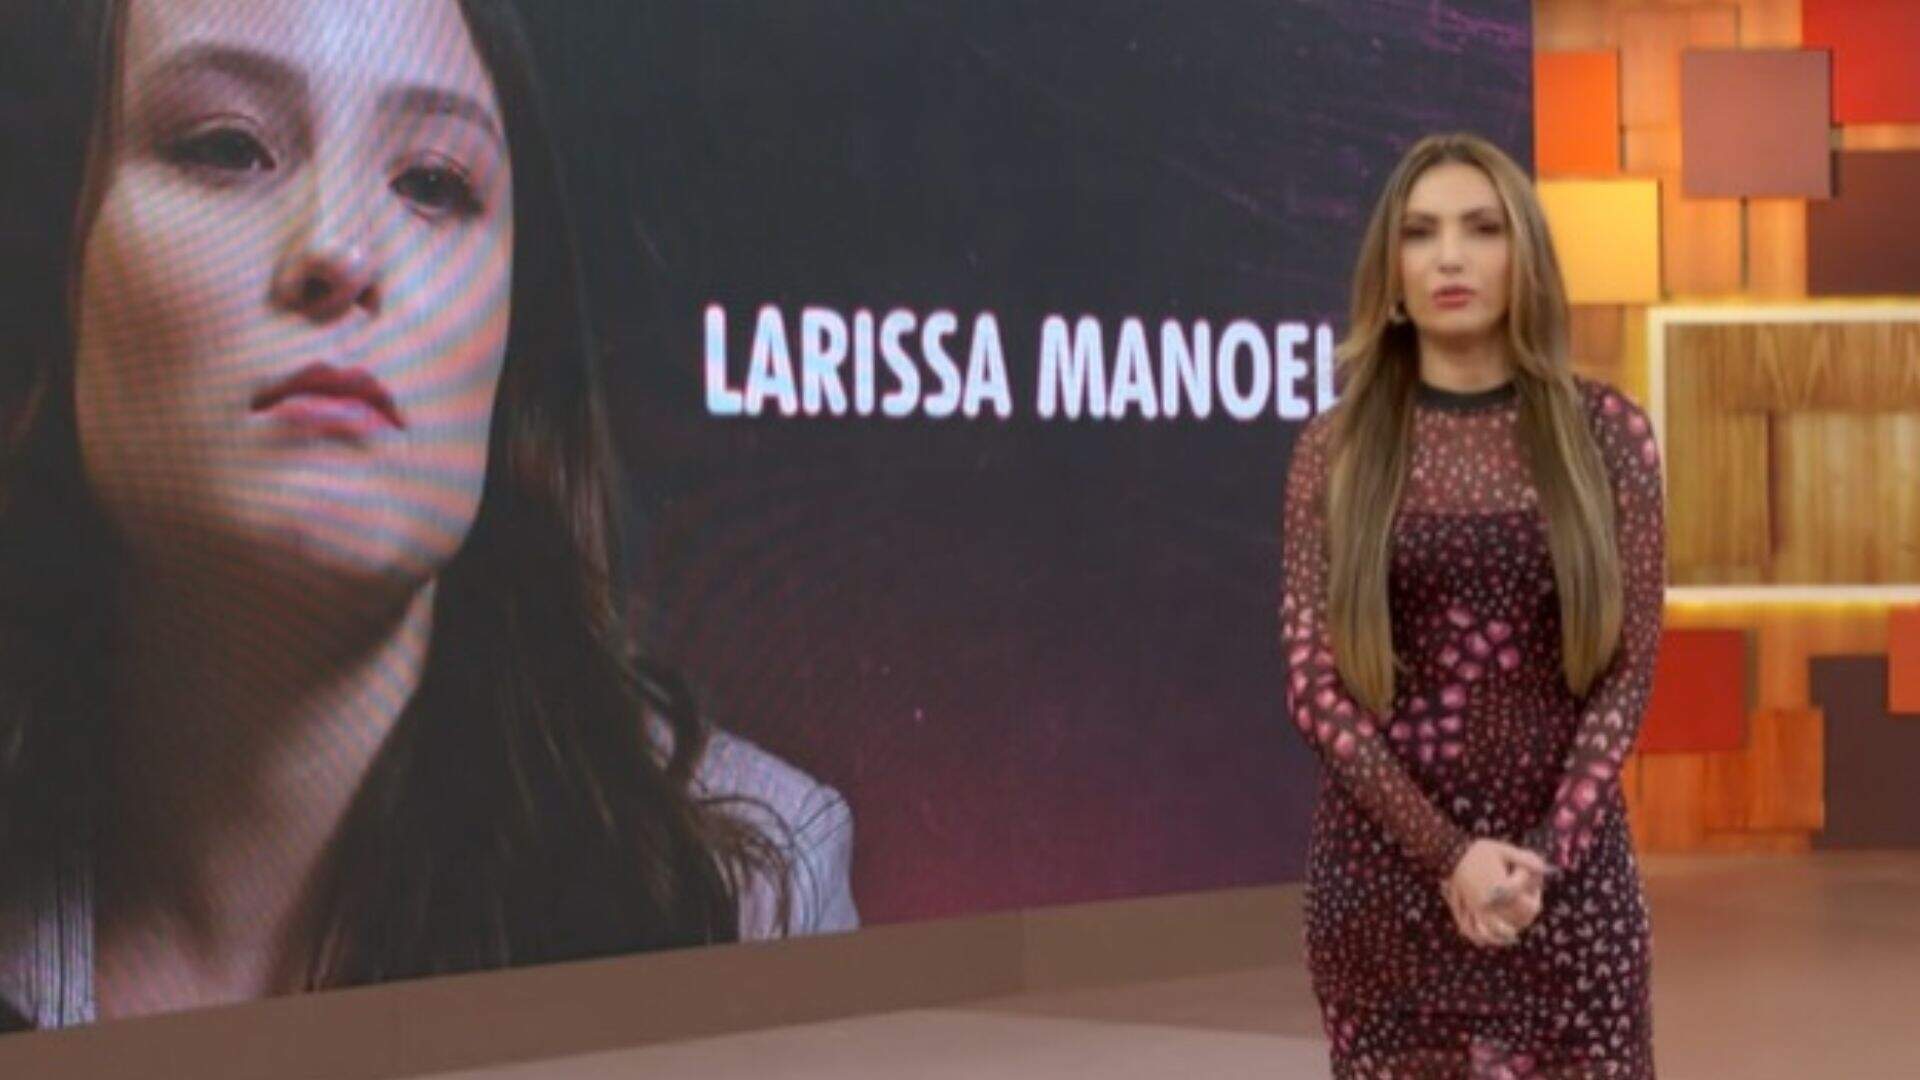 Repercutindo o caso de Larissa Manoela, Patrícia Poeta usa espaço no ‘Encontro’ para dar opinião - Metropolitana FM